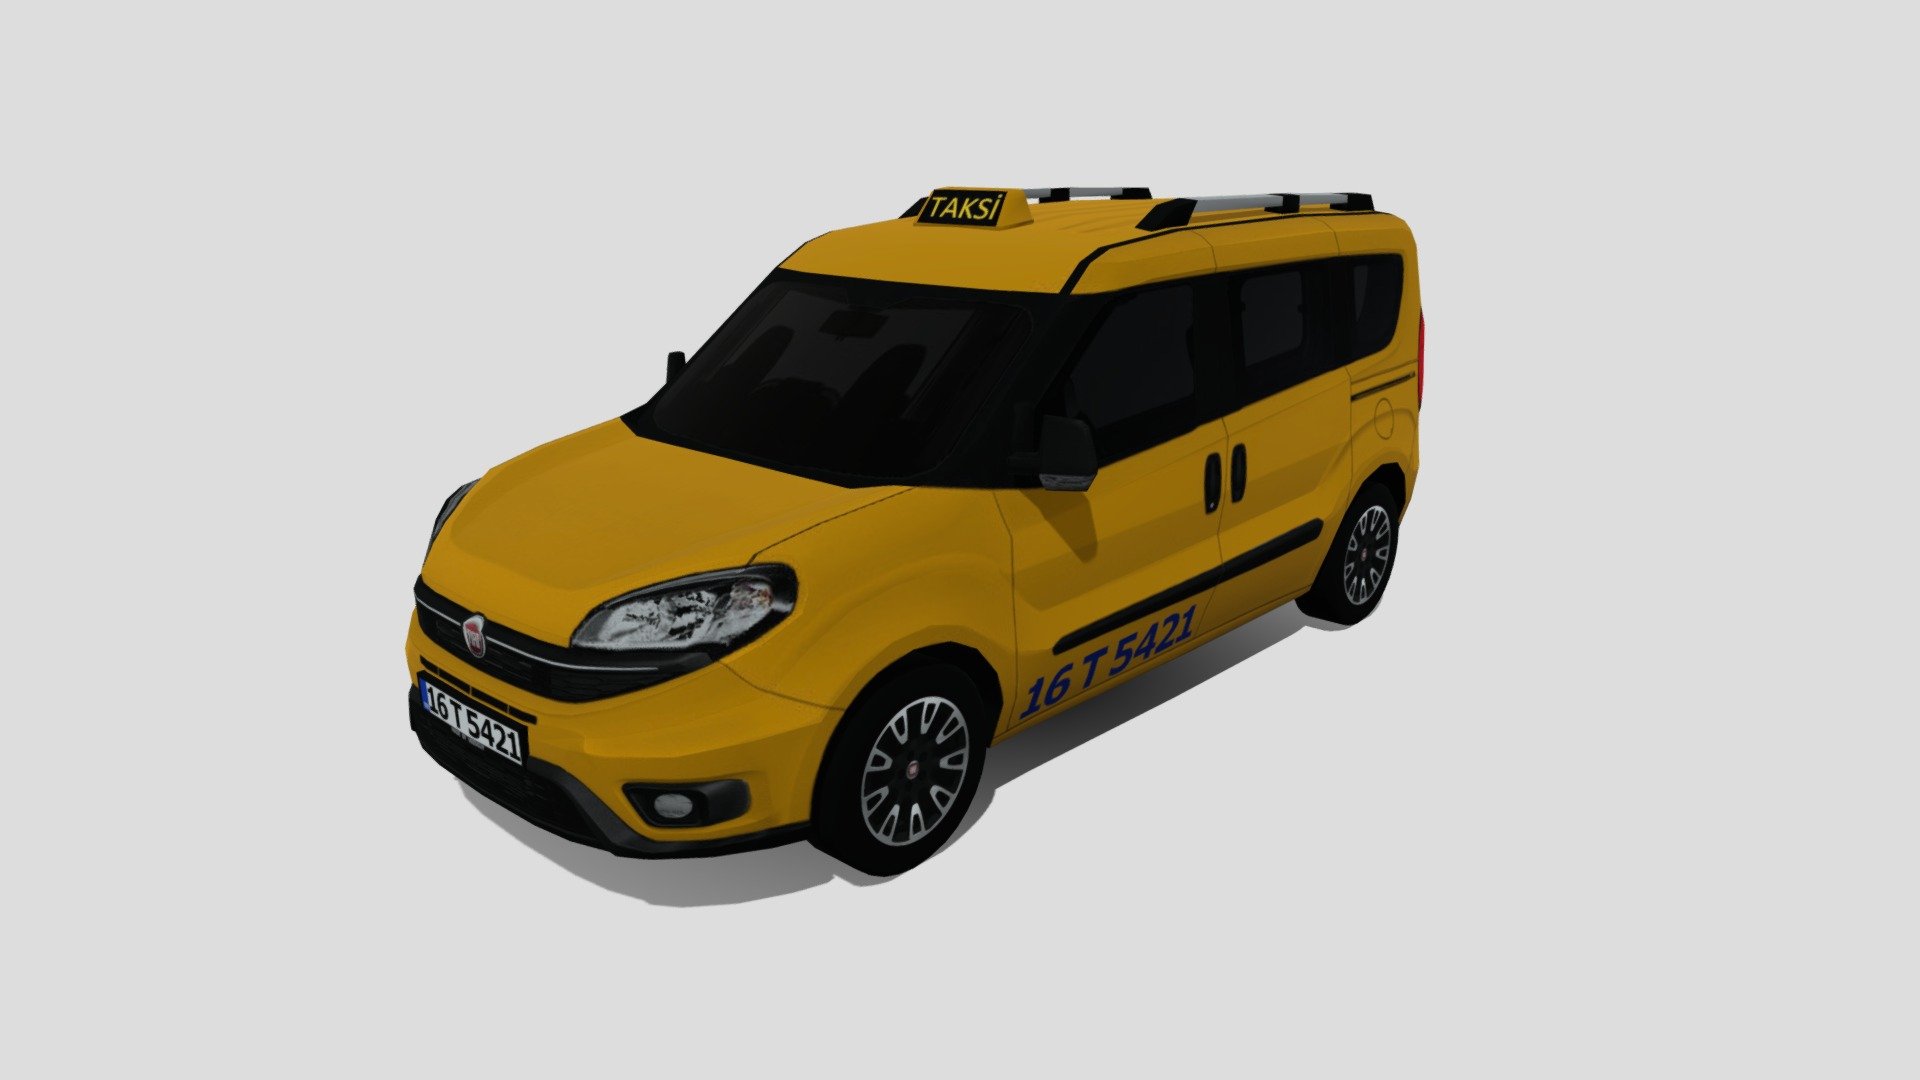 2018 Fiat Doblo Taxi (Turkey/ Türkiye Taksi) by VeesGuy

Tris: 3578
Texture: 1024x1024 - 2018 Fiat Doblo Taxi (Turkey/ Türkiye Taksi) - 3D model by VeesGuy 3d model